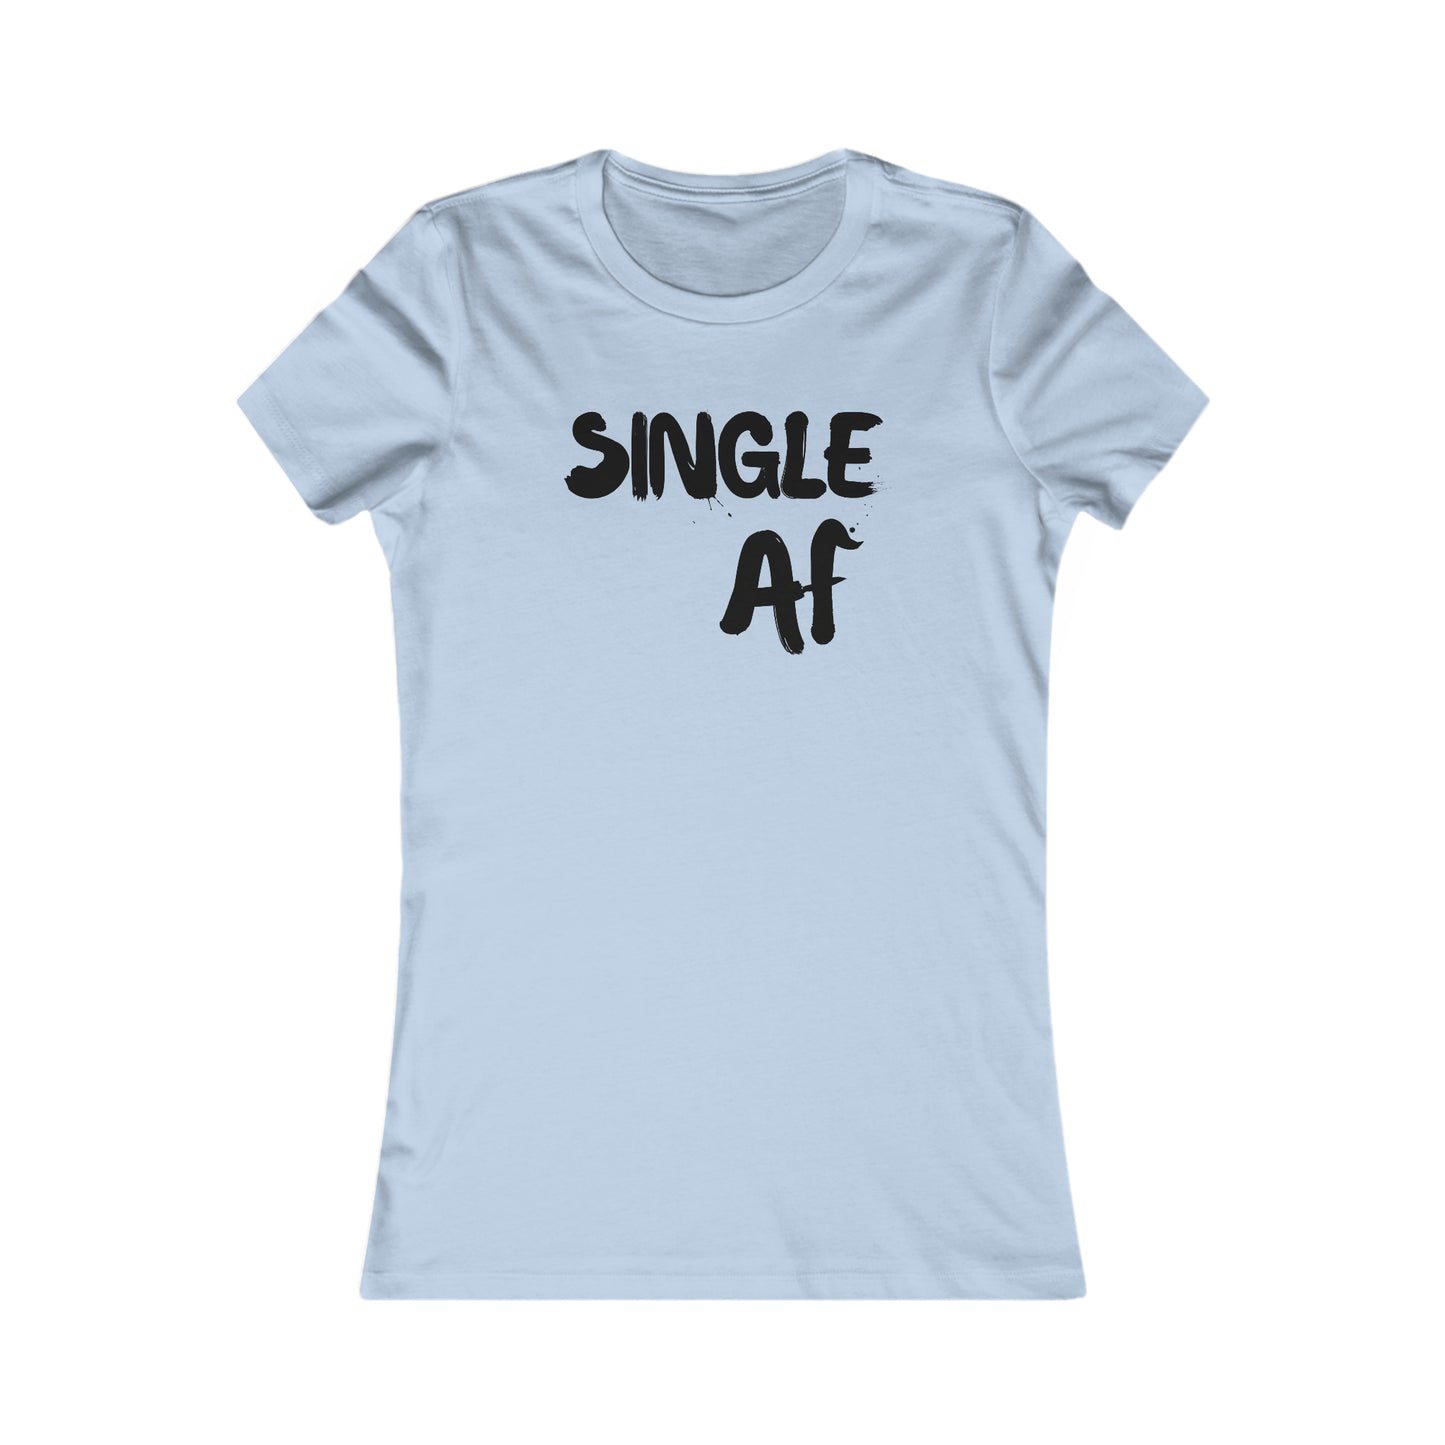 Single AF - Women's Favorite Tee